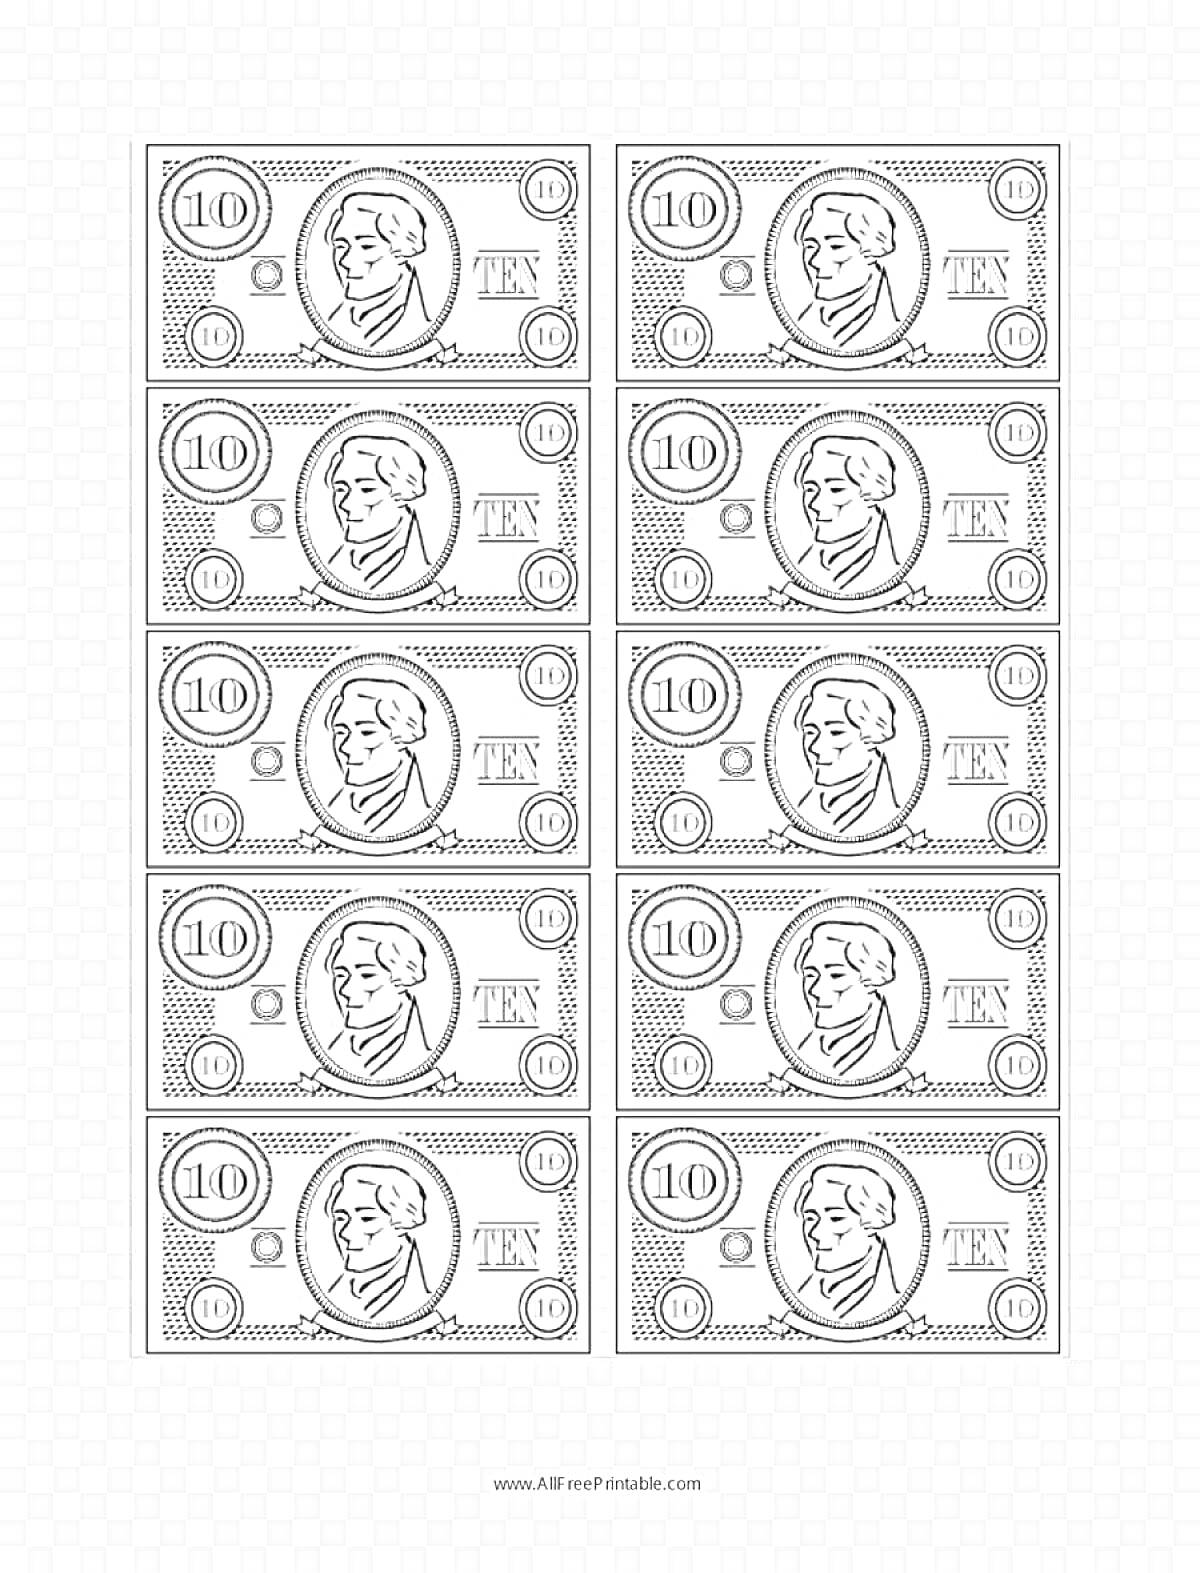 Раскраска банкноты с цифрой 10, портретом человека в круге, цифрами 